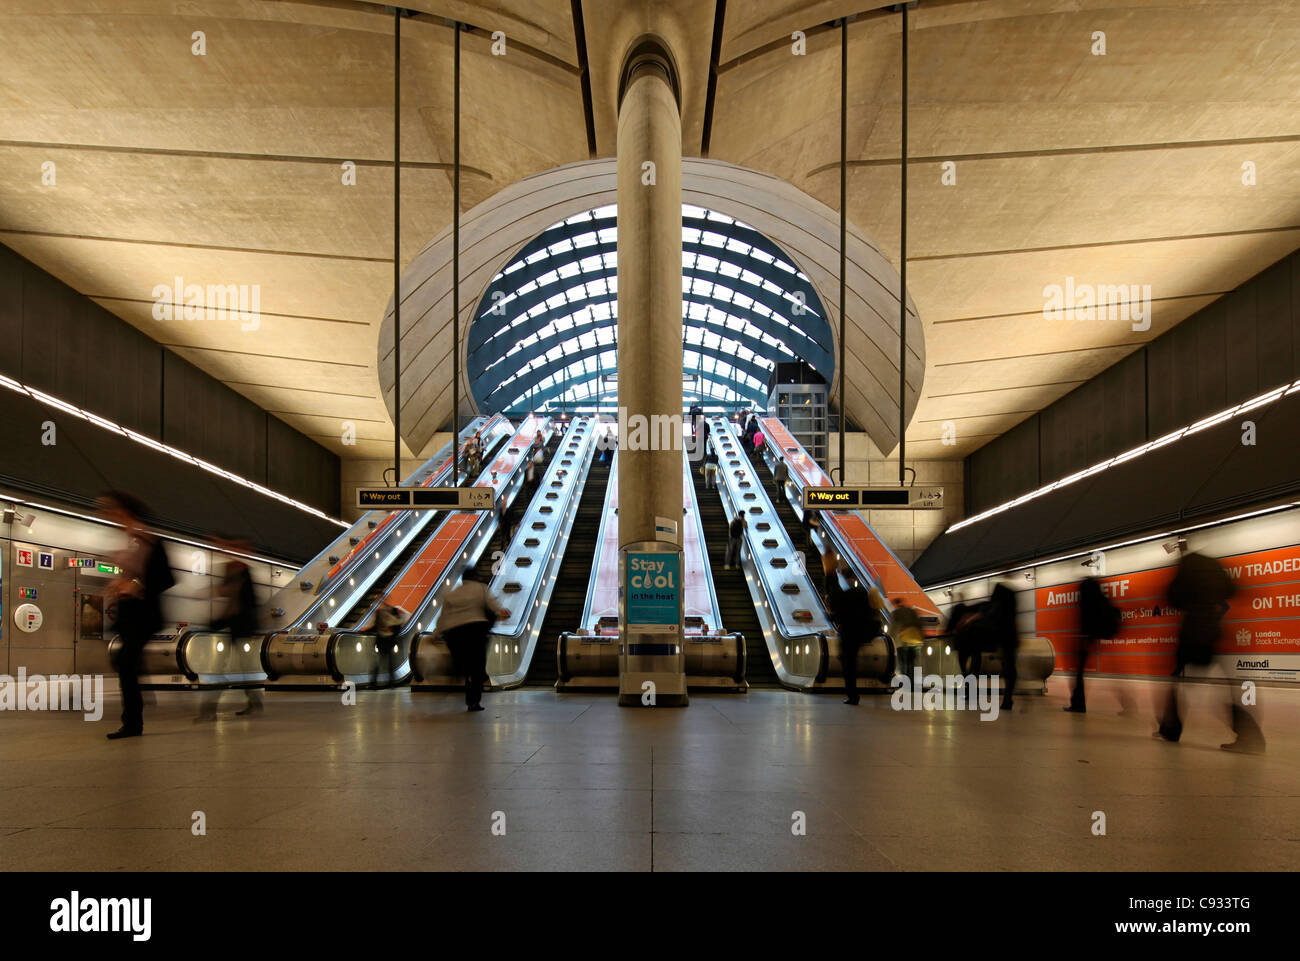 London Canary Wharf Tube Station come parte della Jubilee line extension è stato progettato da Norman Foster. Foto Stock